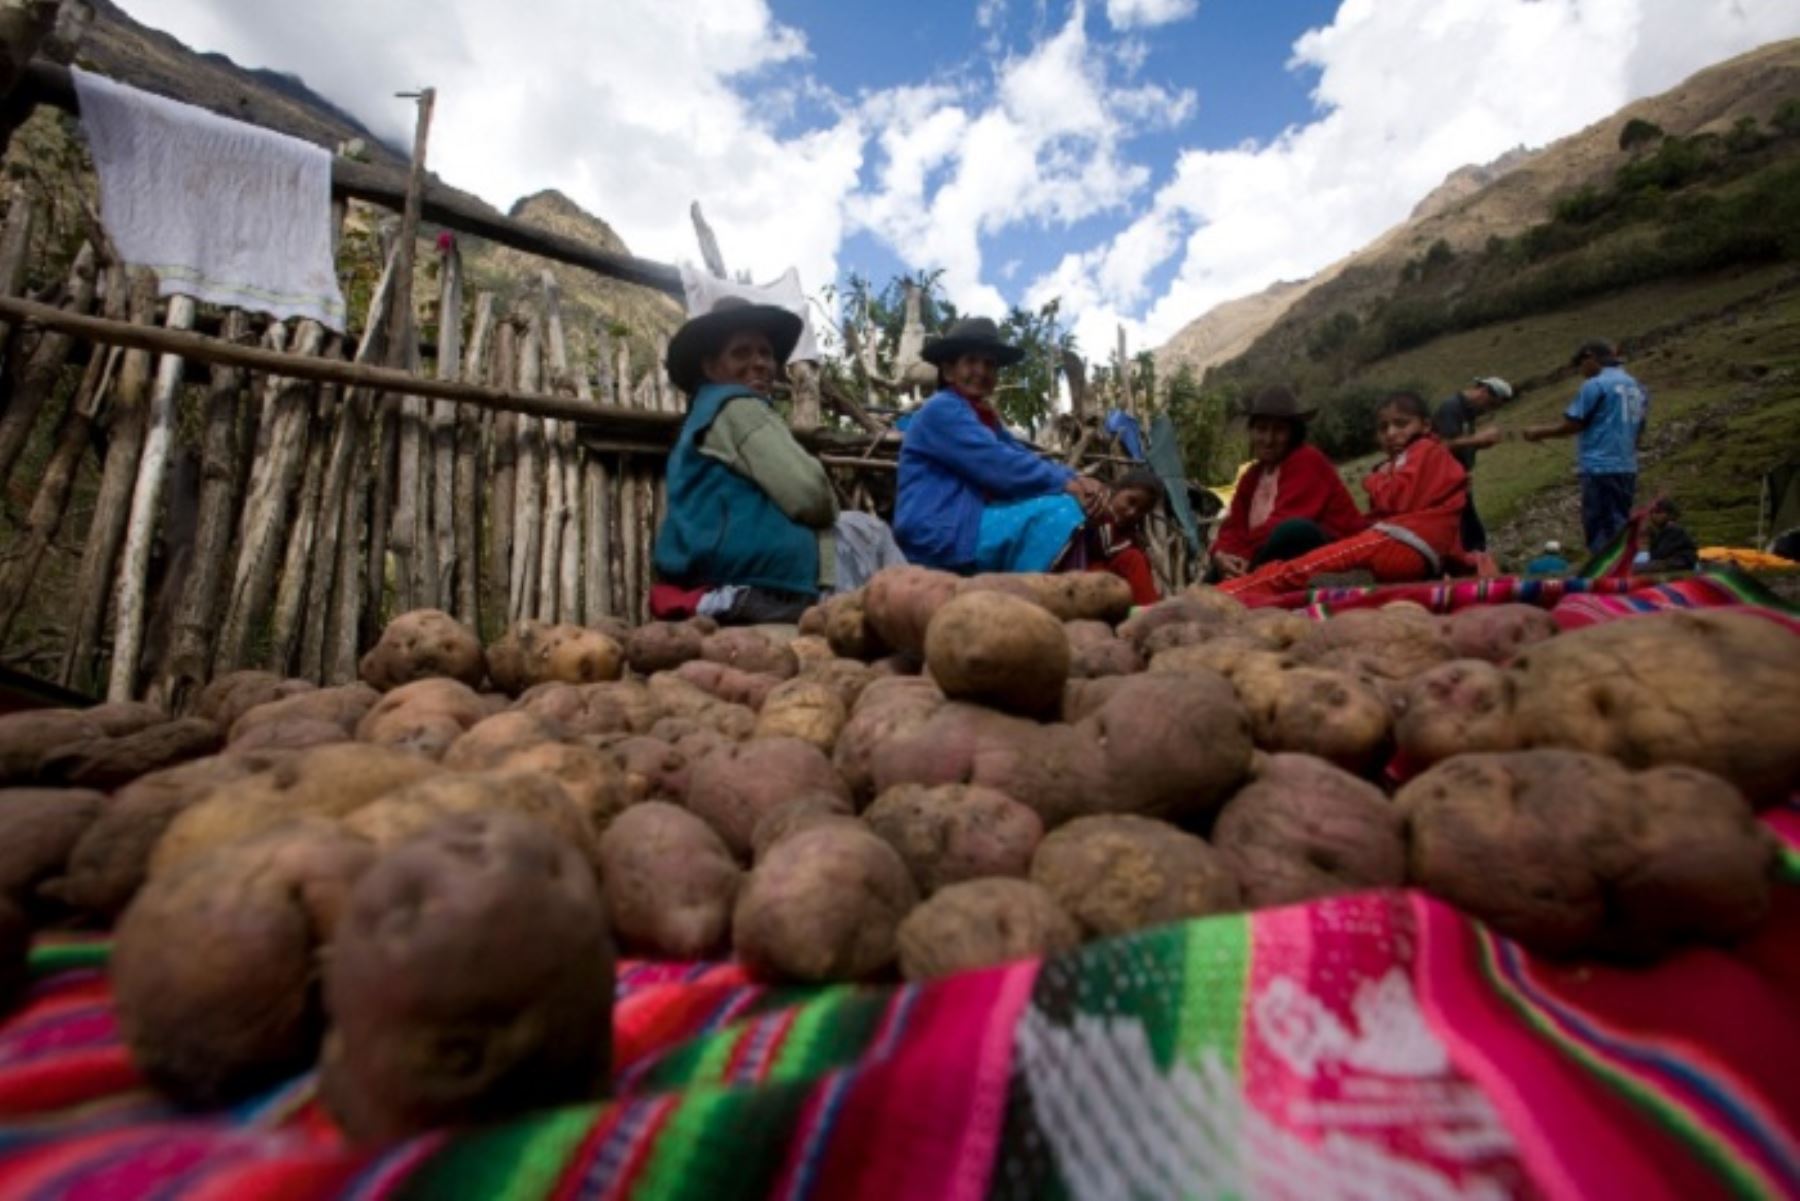 Son alrededor de 154 familias de productores pertenecientes a las comunidades campesinas de Sacsayllama y Juan Velasco Alvarado, distrito de Huayllabamba, provincia ancashina de Sihuas.